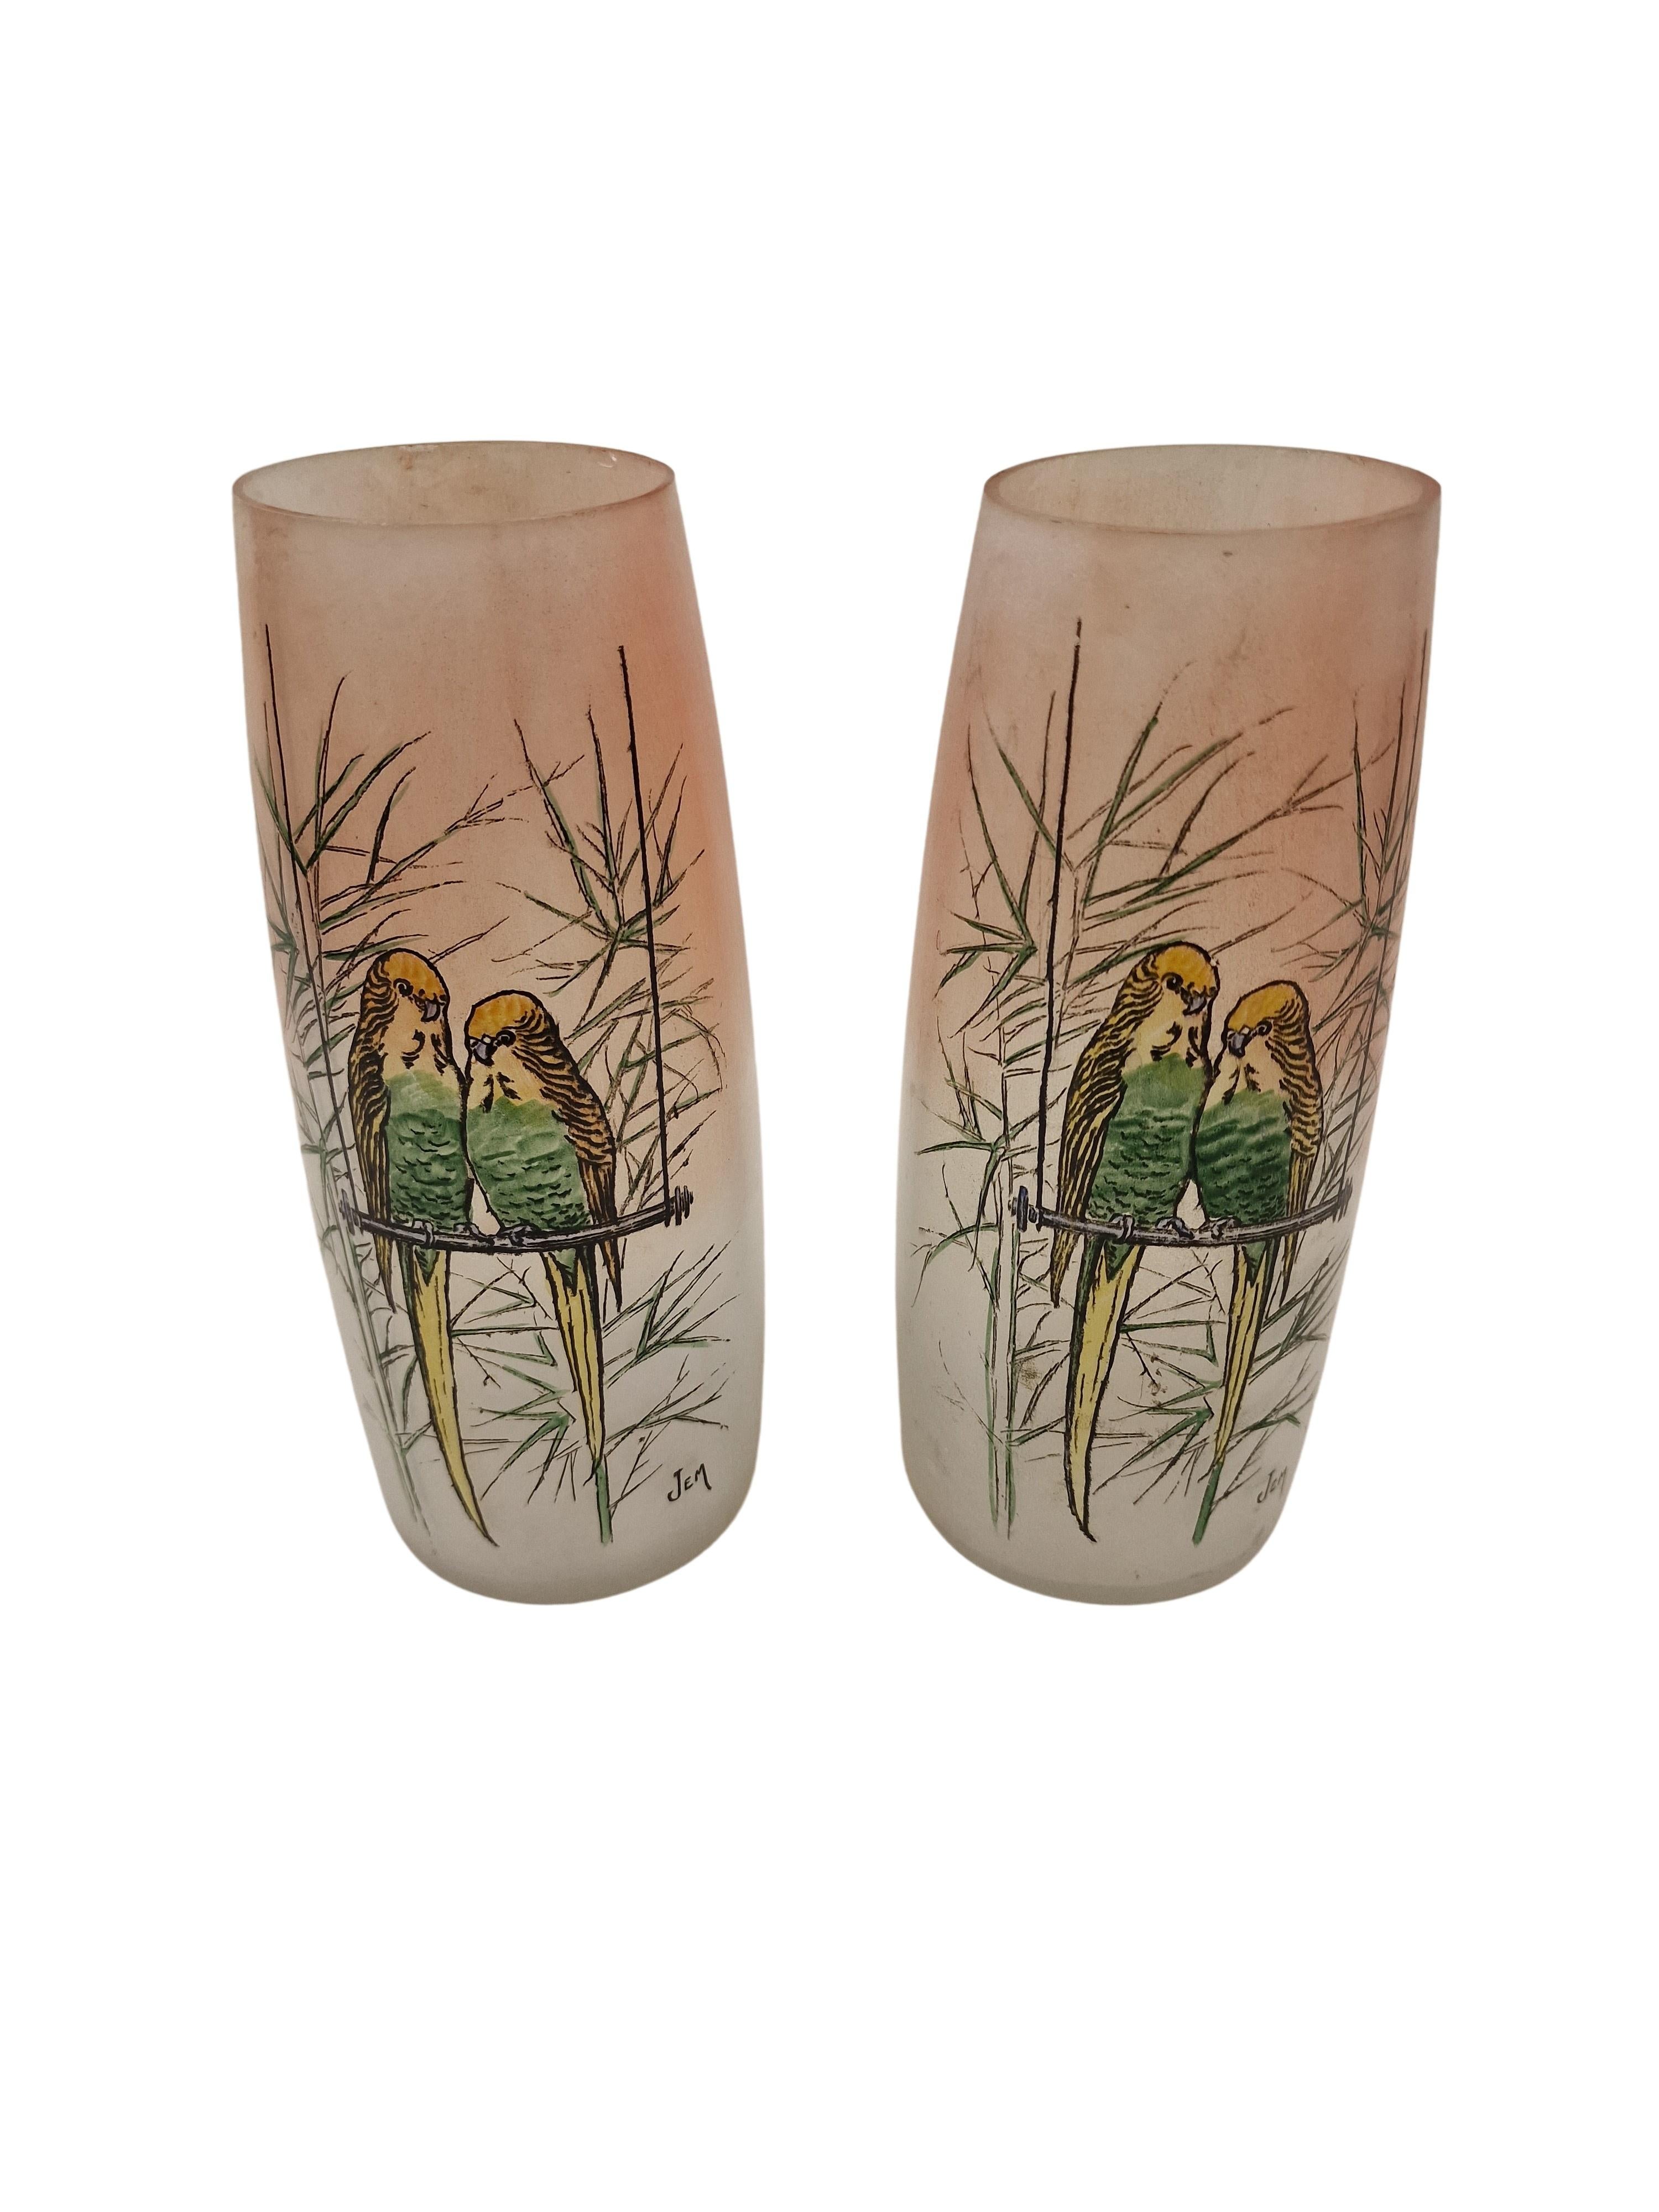 Très belle paire de vases à fleurs, fabriqués pendant la période Art Déco, vers 1920, par la célèbre verrerie Legras en France. 

Les deux vases ont une forme cubique en relief et présentent une couleur pastel particulière. 
Les vases sont décorés